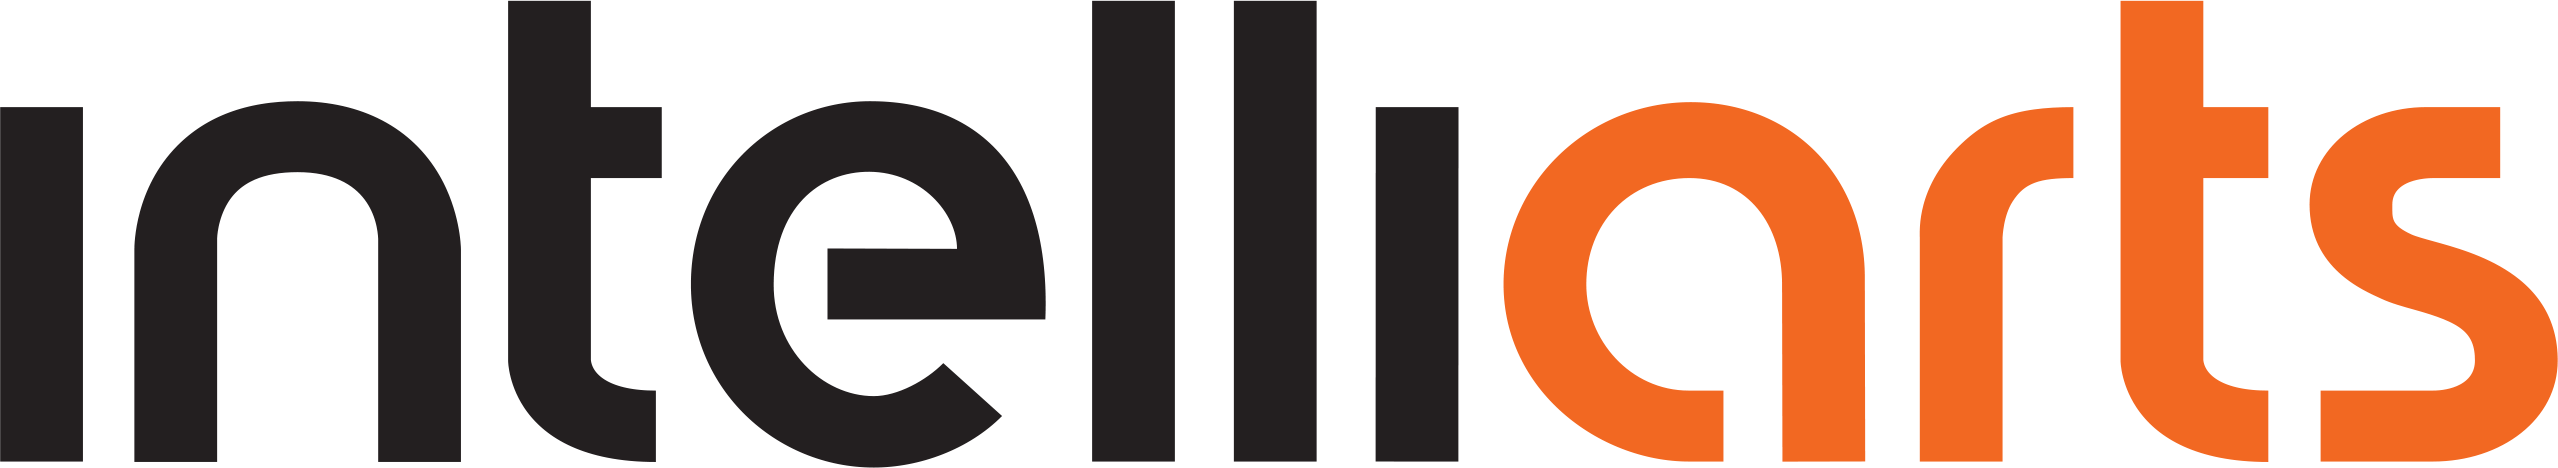 Intelliarts company logo